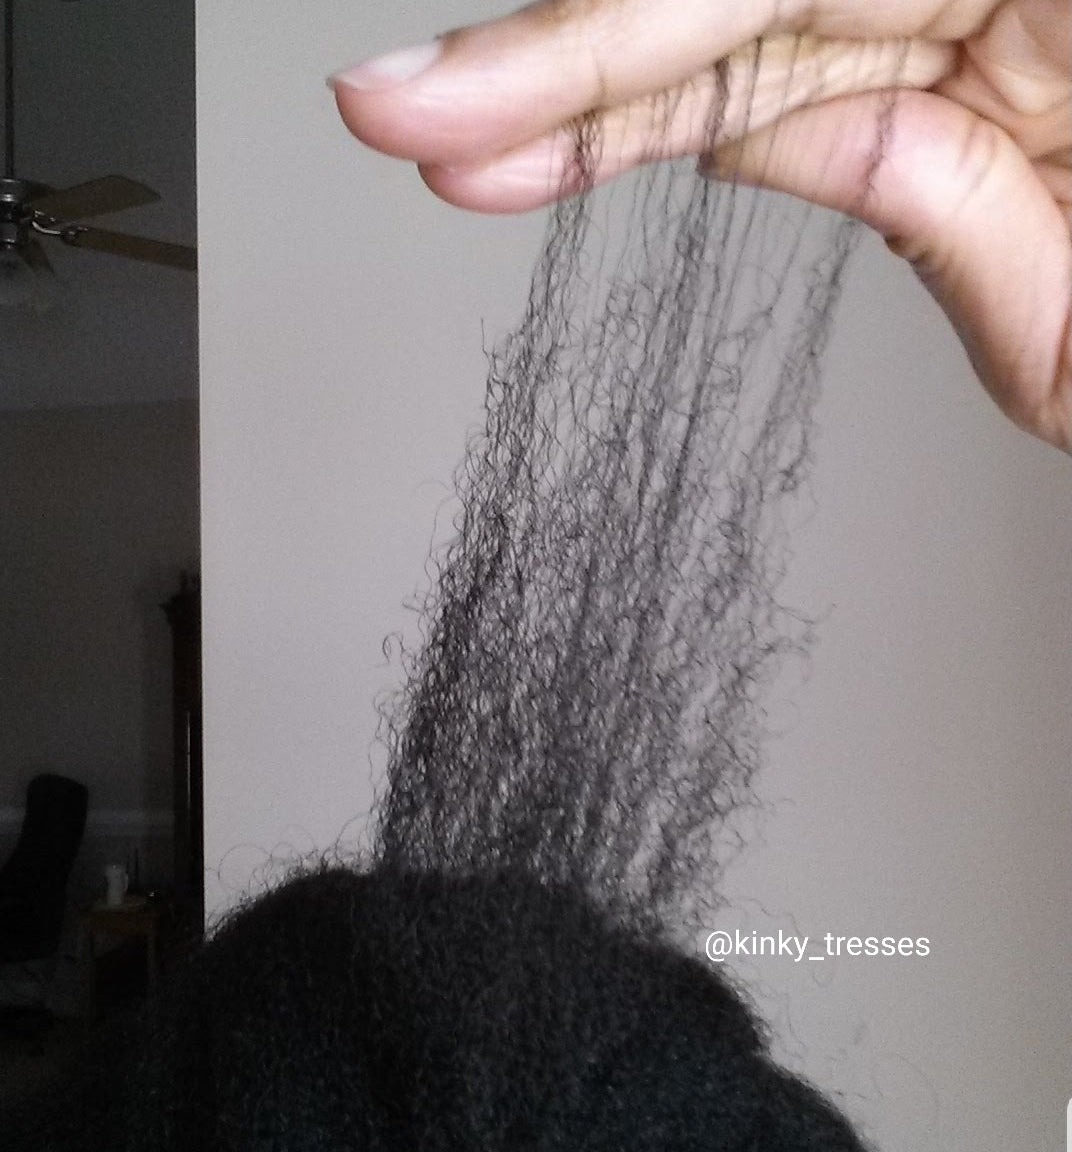 Do Durags Cause Hair Loss?